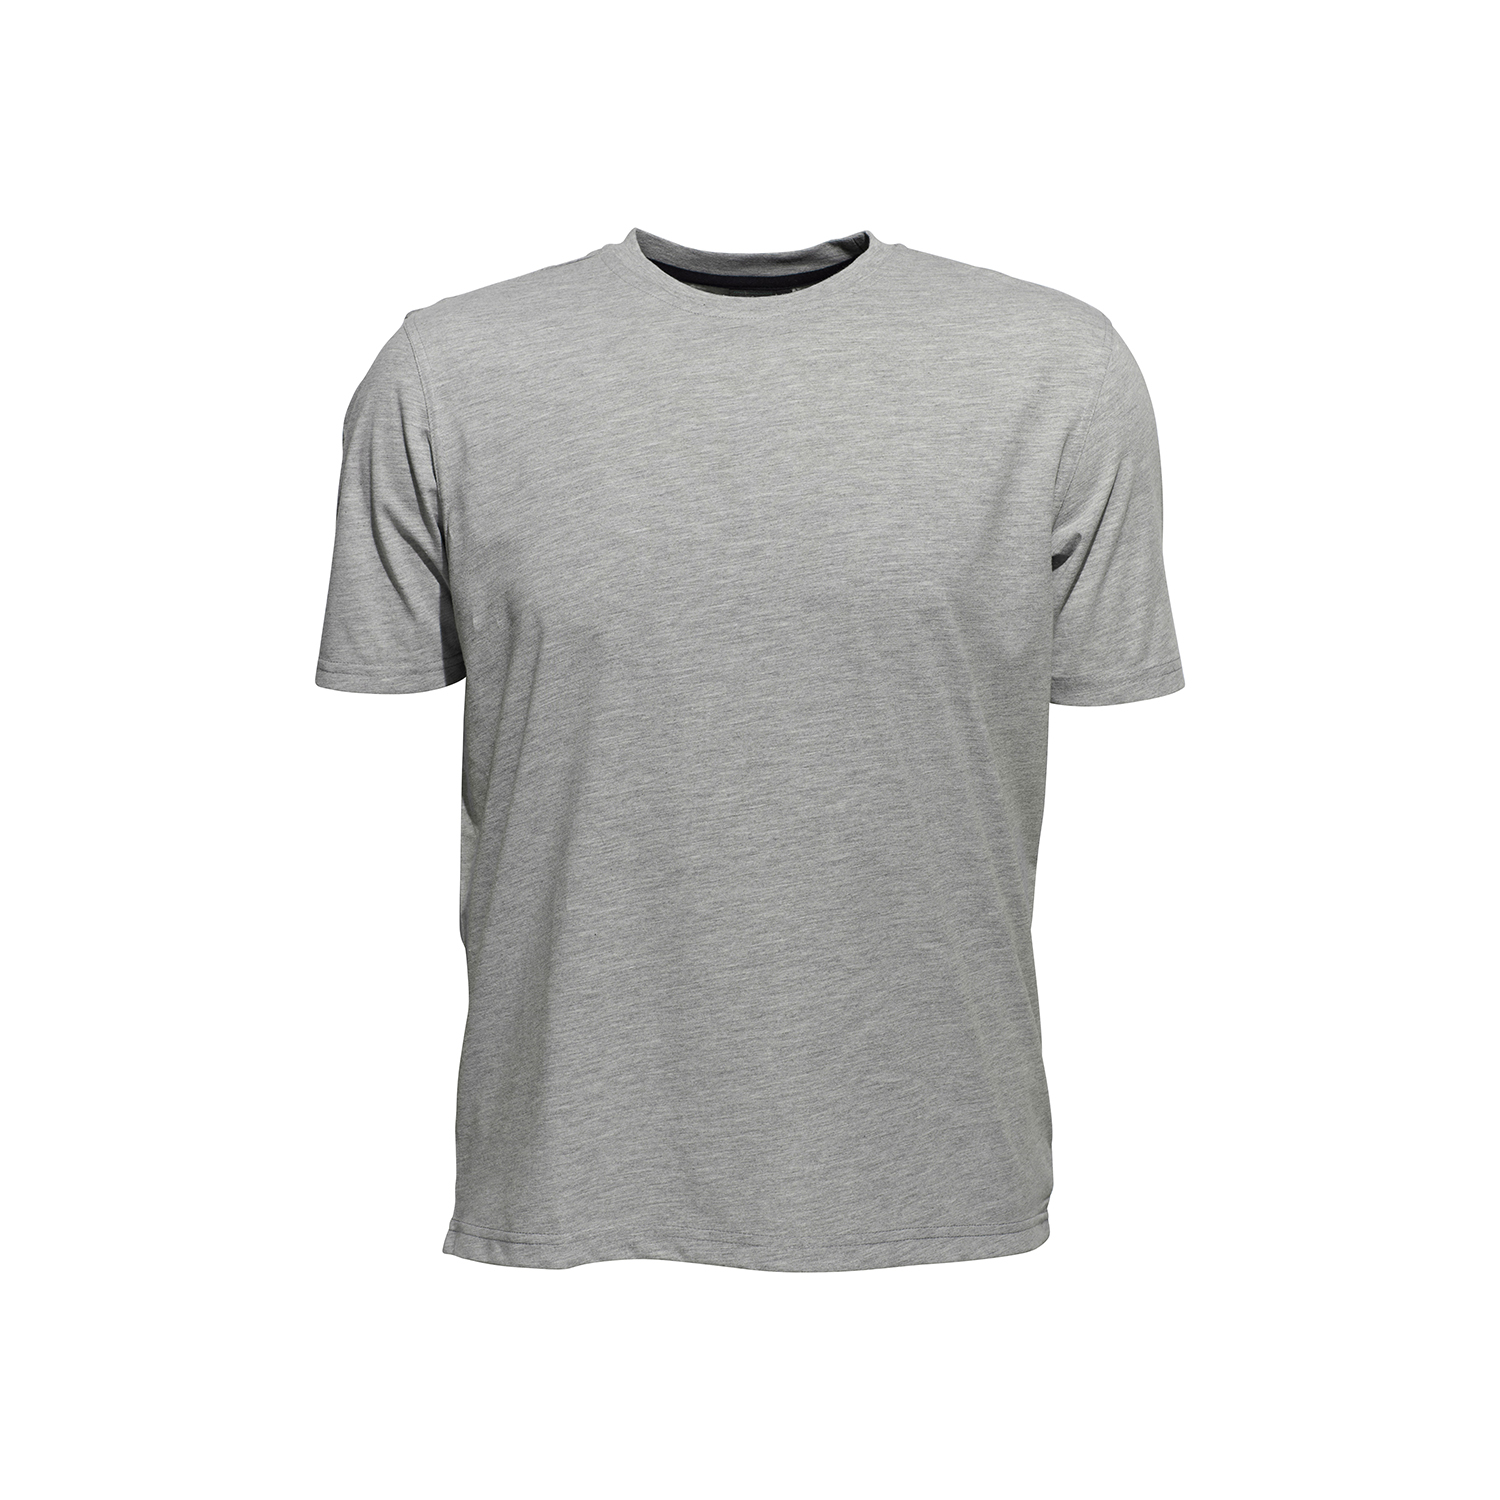 T-Shirt für Herren mit Rundhals von Ahorn Sportswear in großen Größen XXL bis 10XL - graumeliert